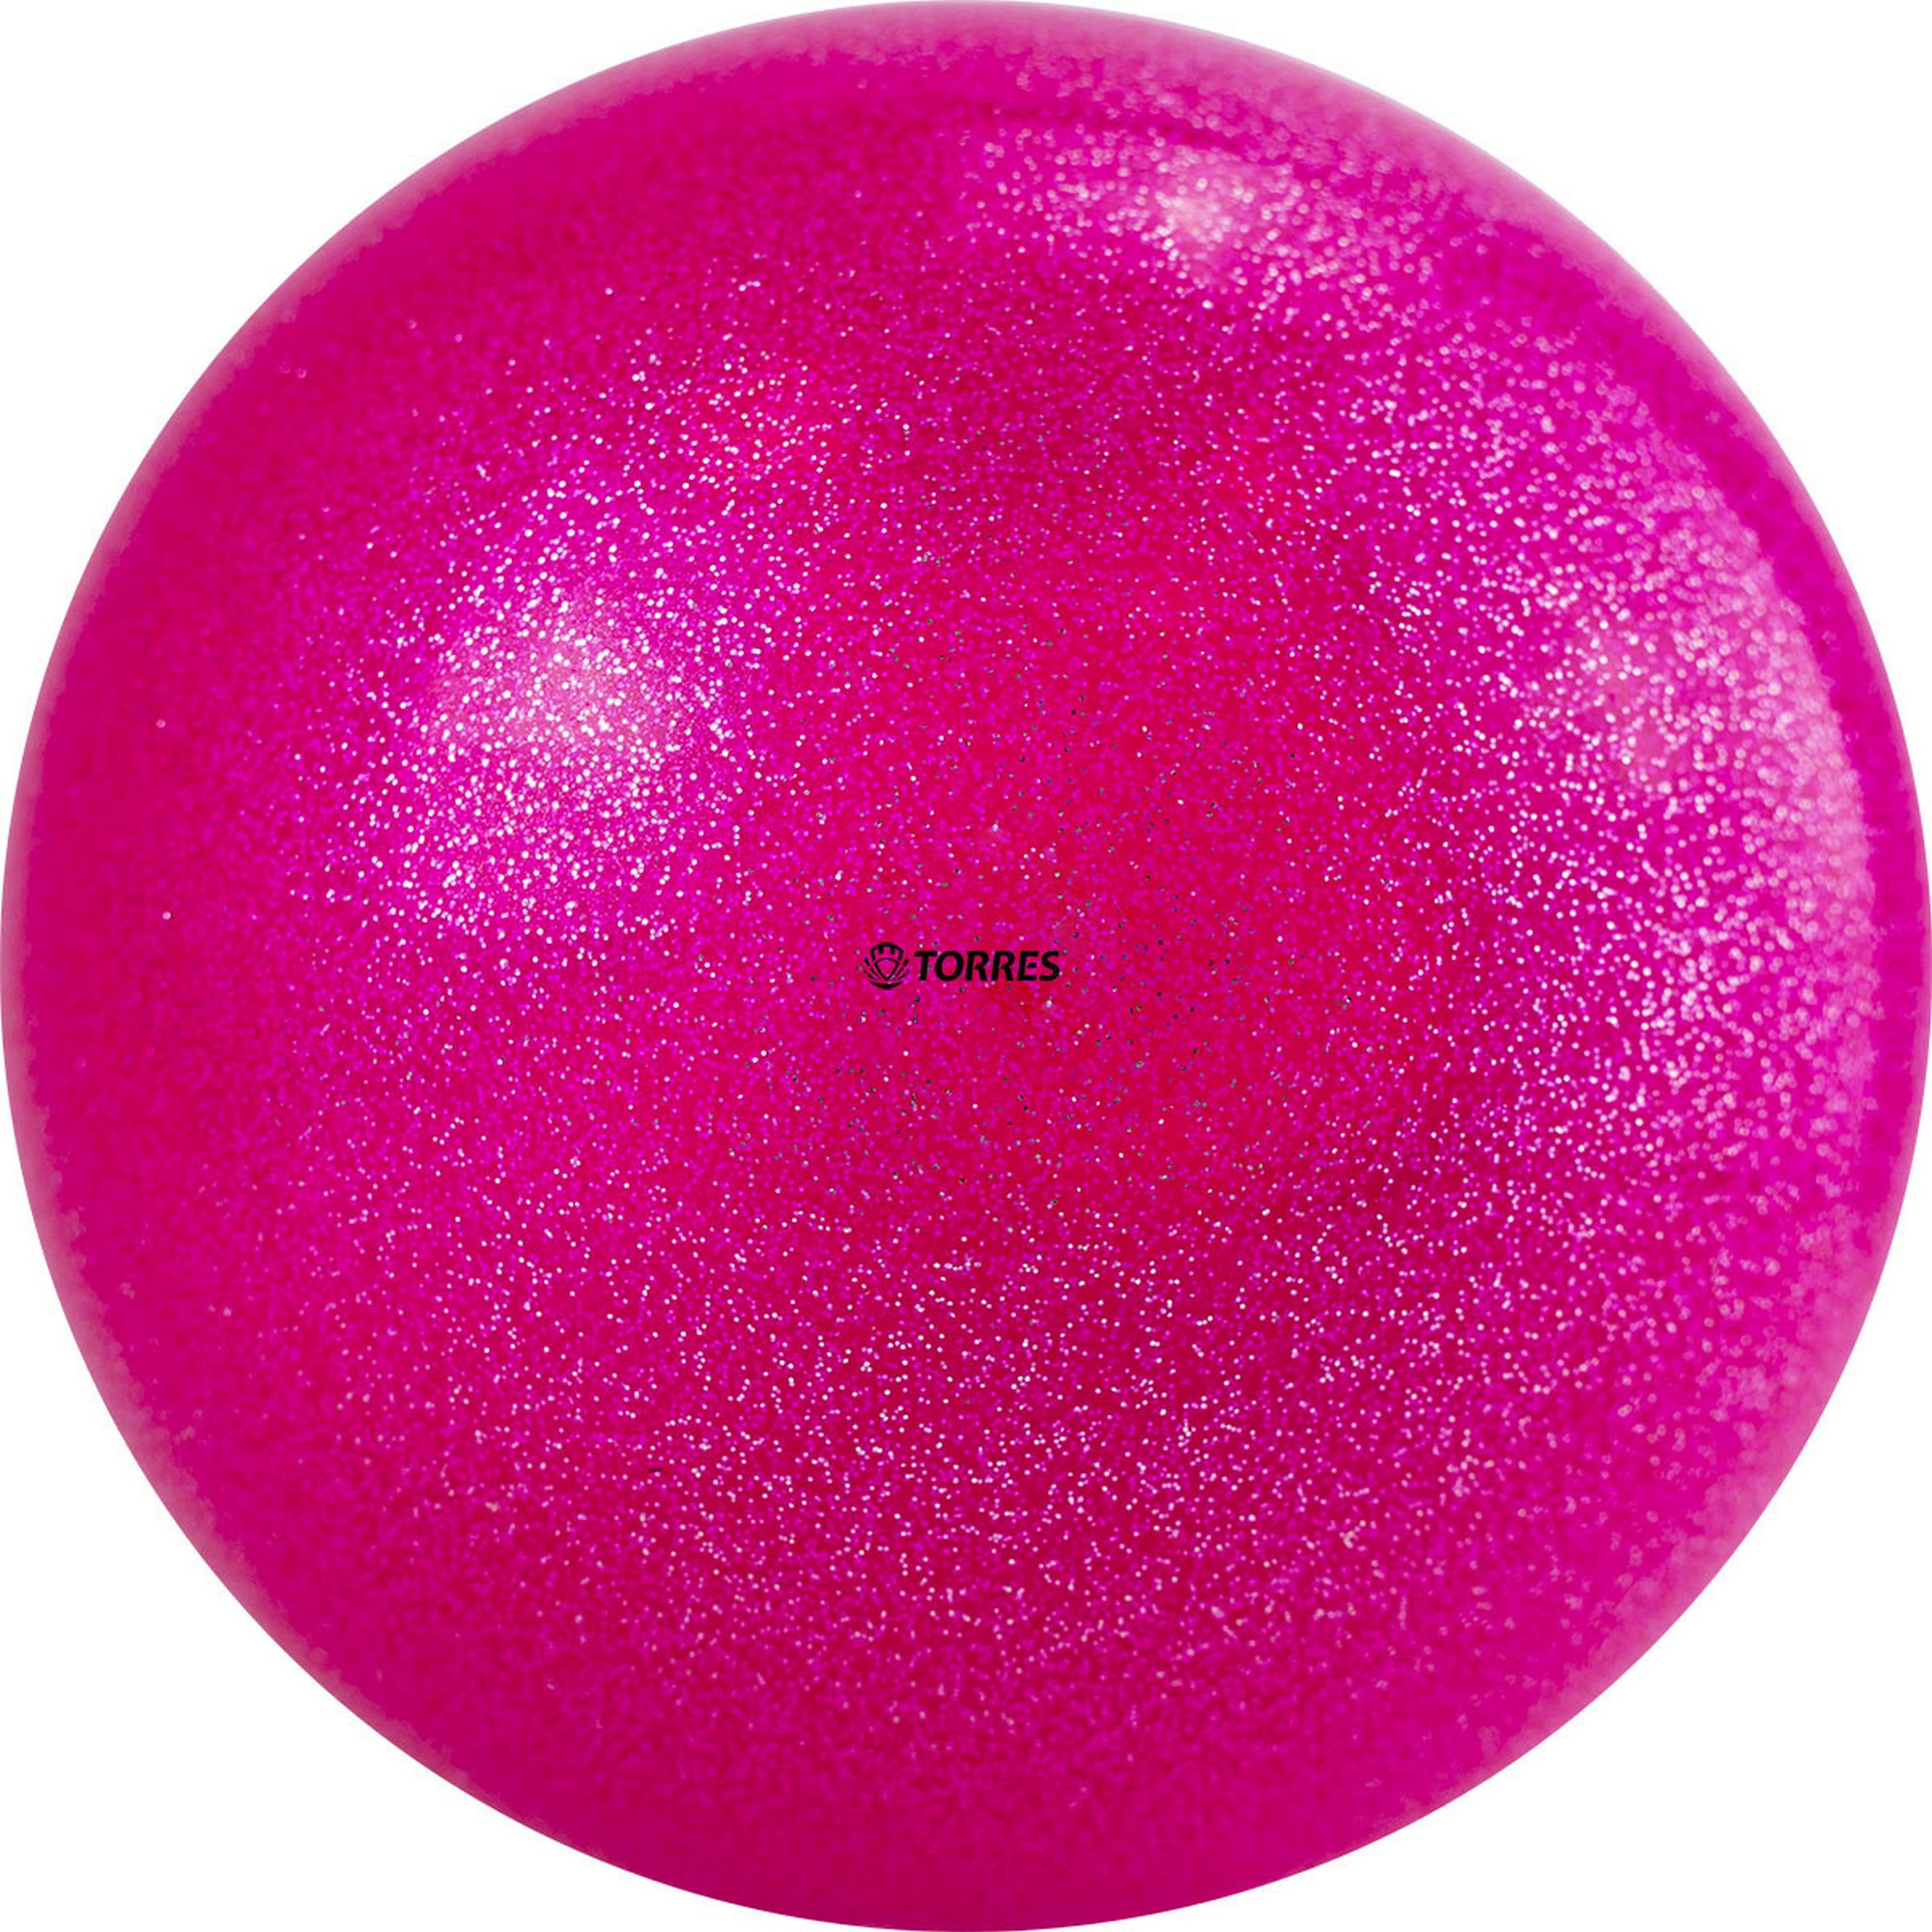 фото Мяч для художественной гимнастики d19см torres пвх agp-19-01 розовый с блестками